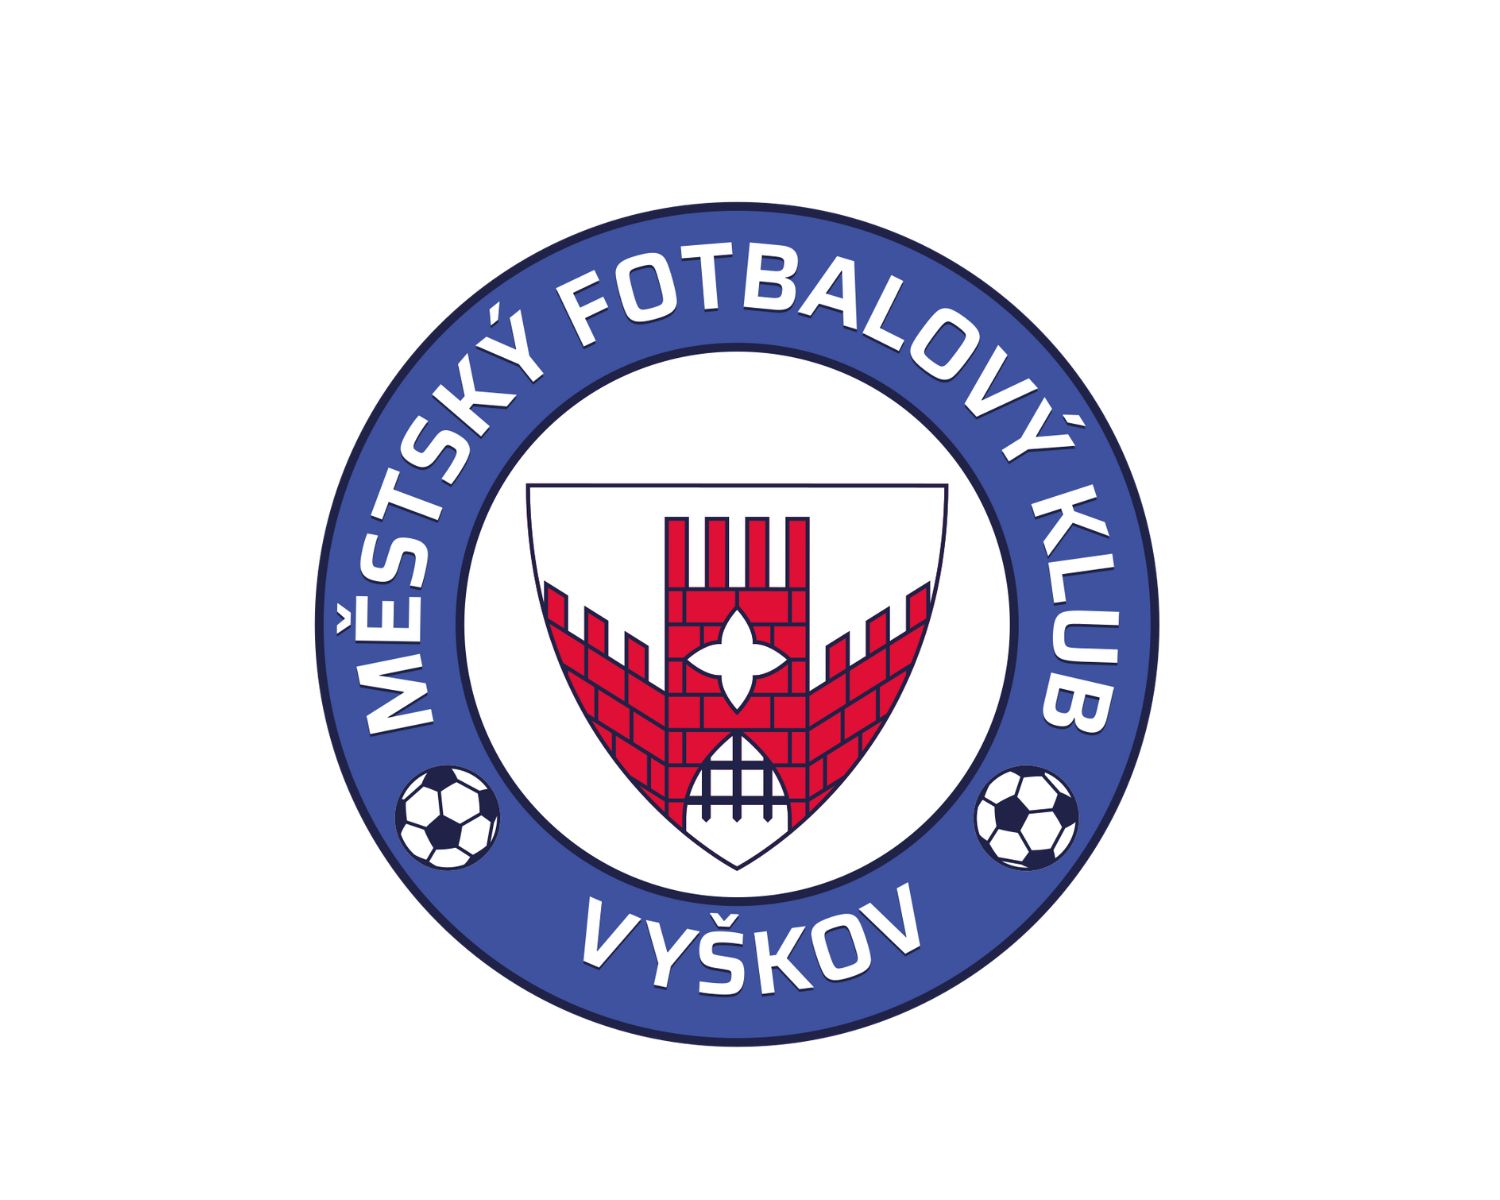 mfk-vyskov-15-football-club-facts